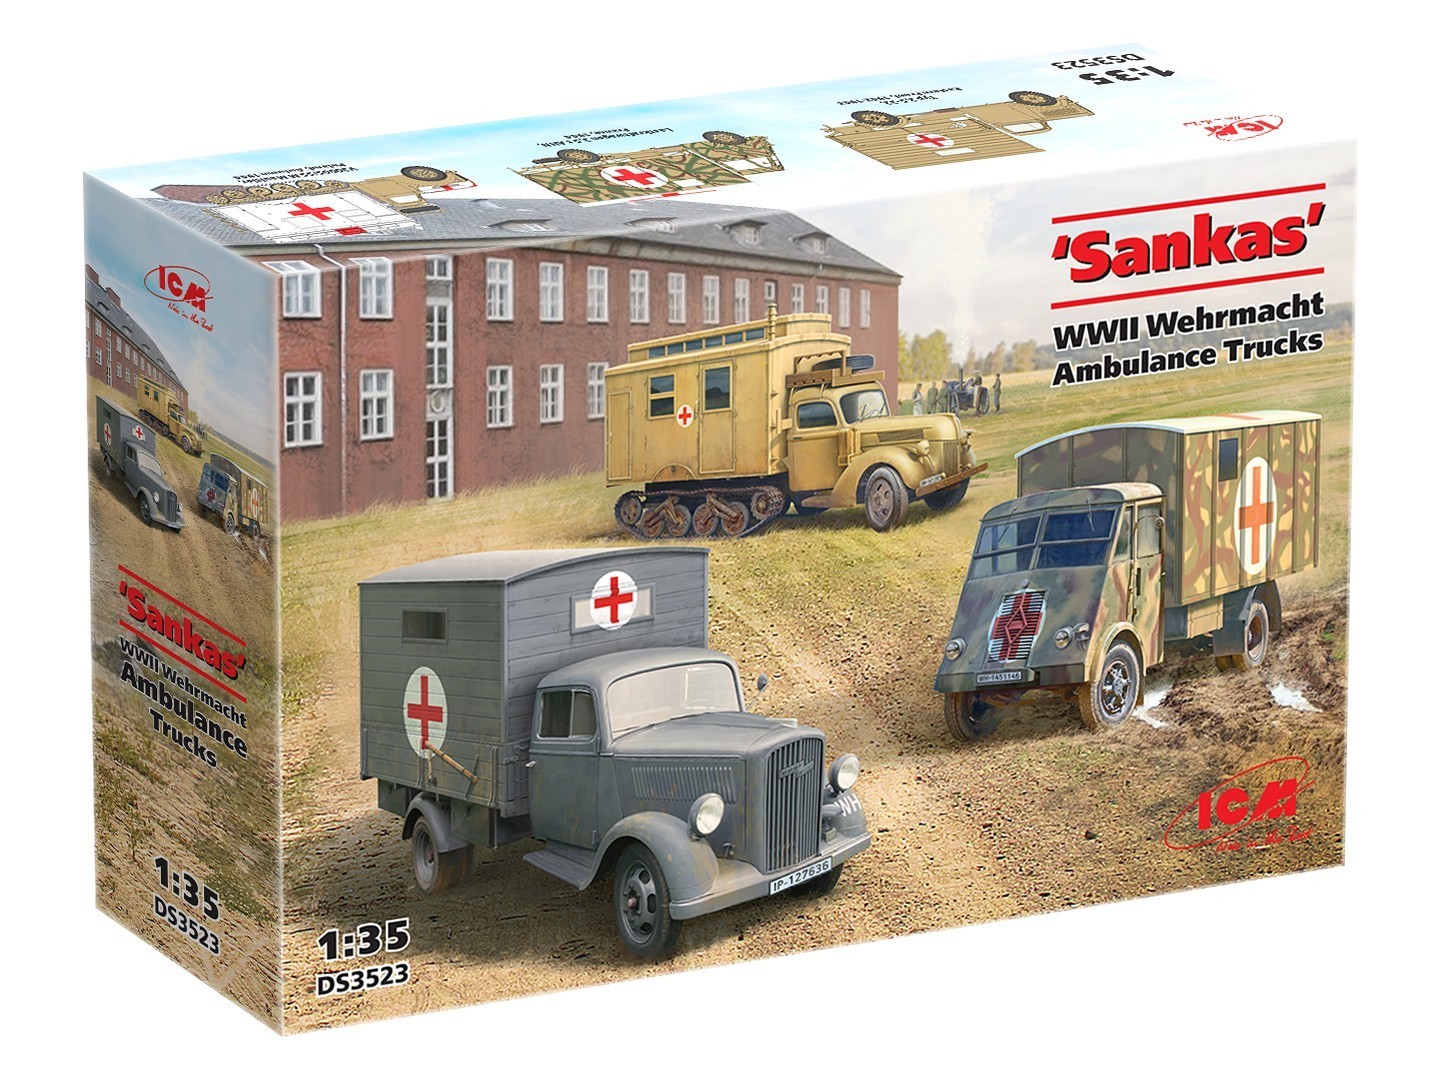 ‘Sankas’ WWII Wehrmacht Ambulance Trucks